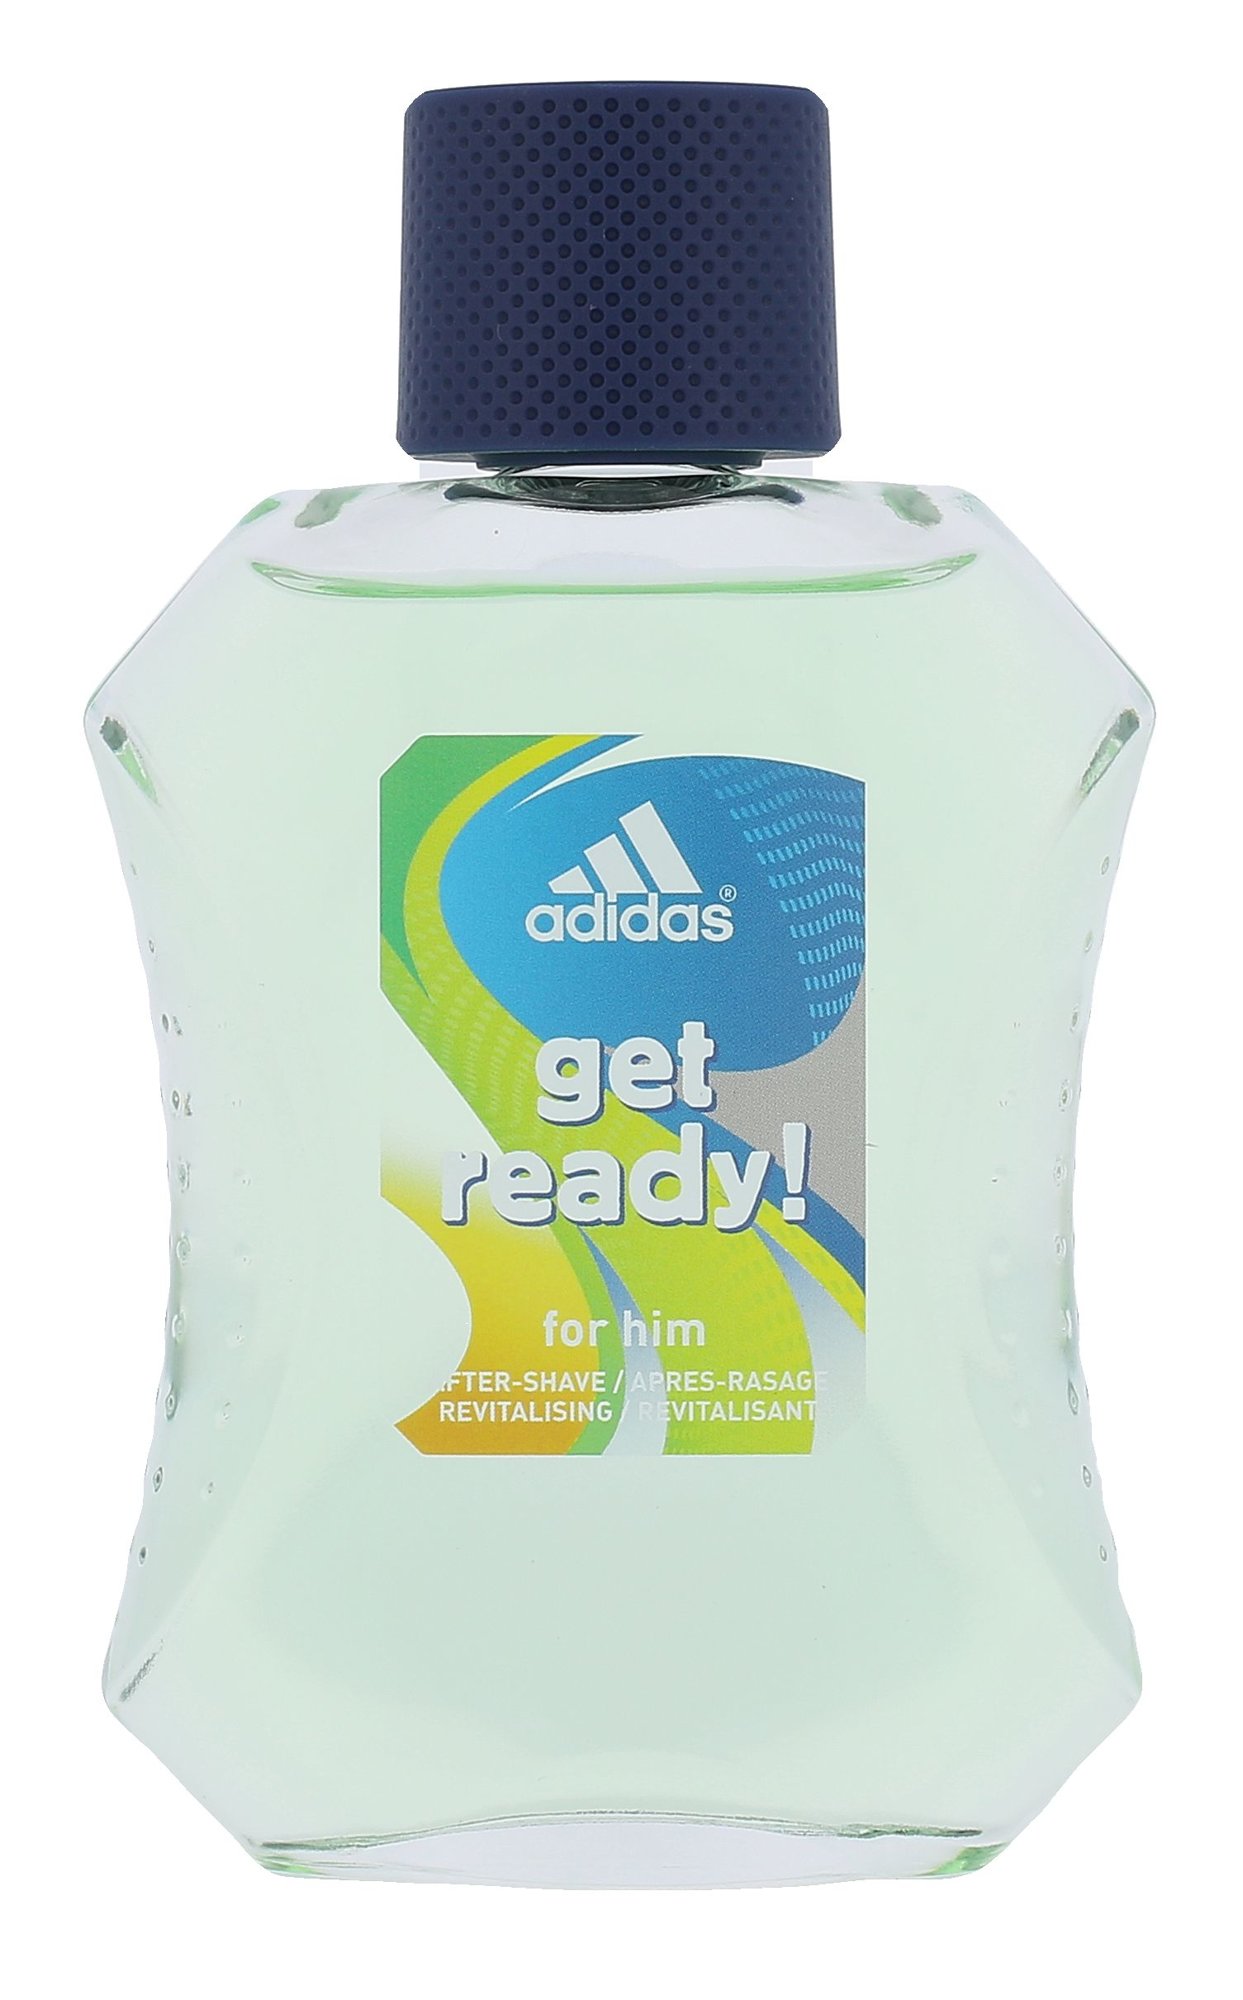 Adidas Get Ready! 100ml vanduo po skutimosi (Pažeista pakuotė)